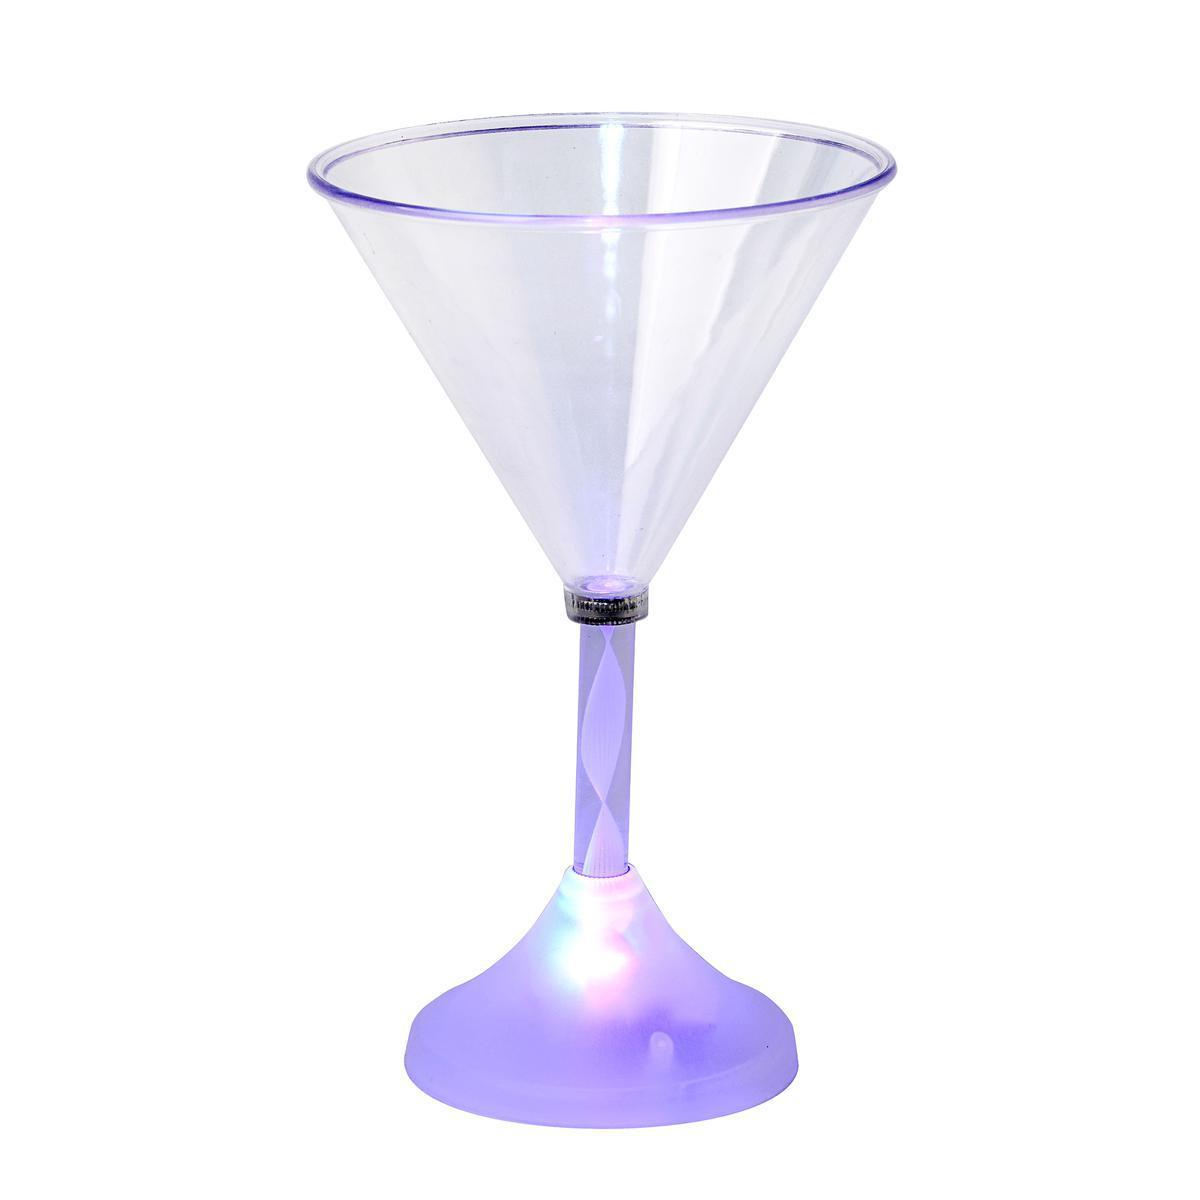 Verre cocktail LELED - Plastique - 10,5 x 10,5 x 17 cm - Blanc